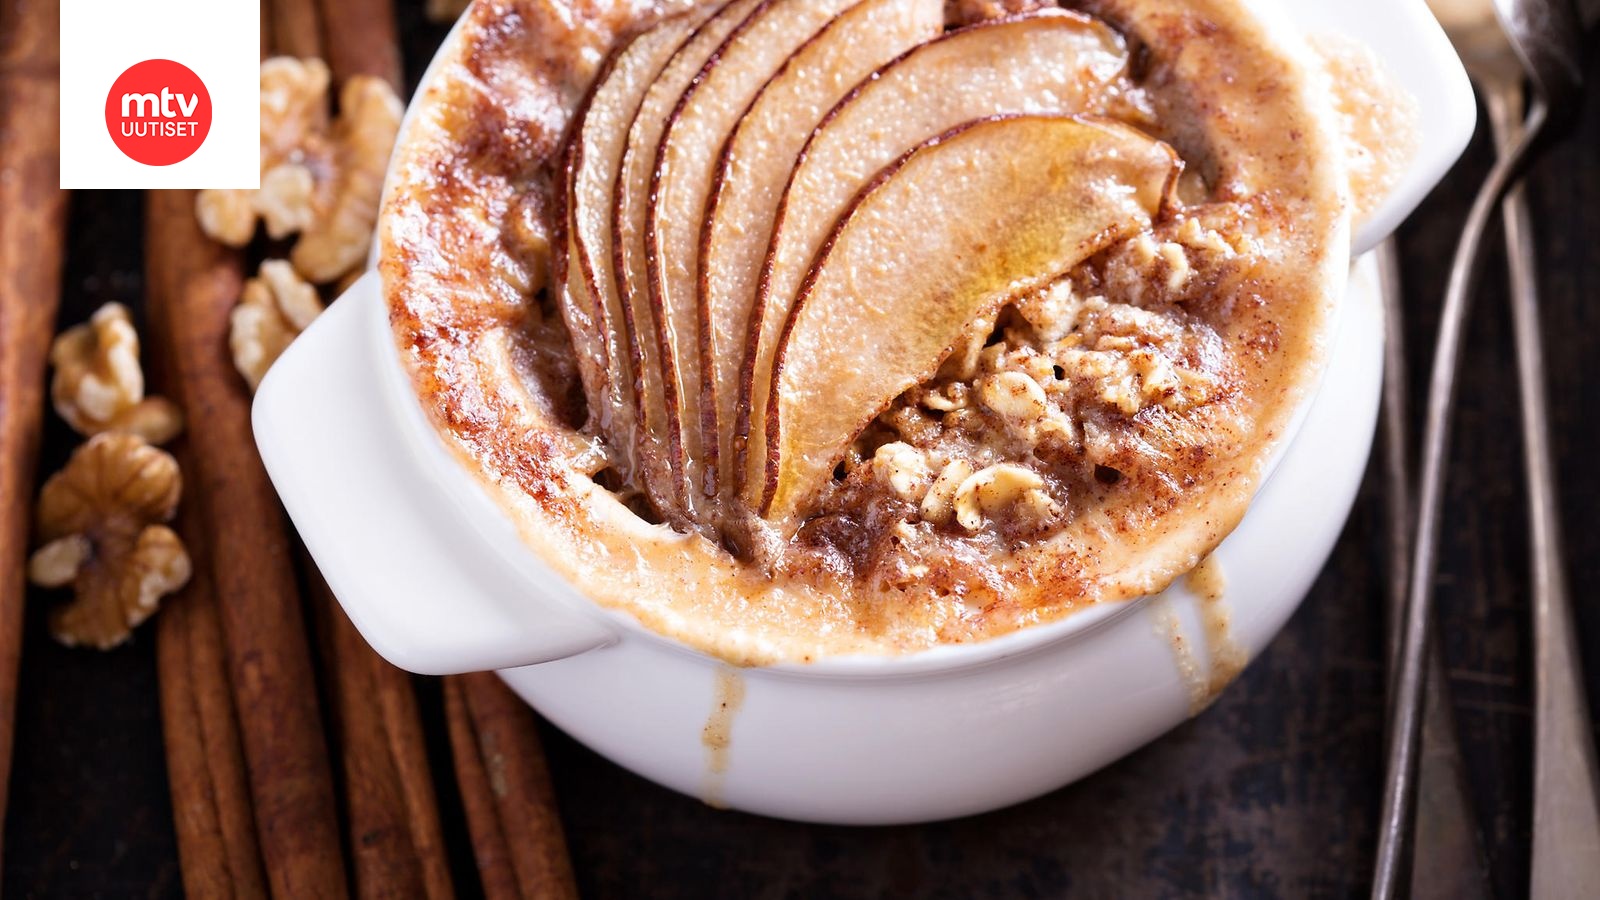 Pika-aamupala 10 minuutissa: Terveellinen herkku, joka maistuu  omenapiirakalle! | Makuja | MTV Uutiset